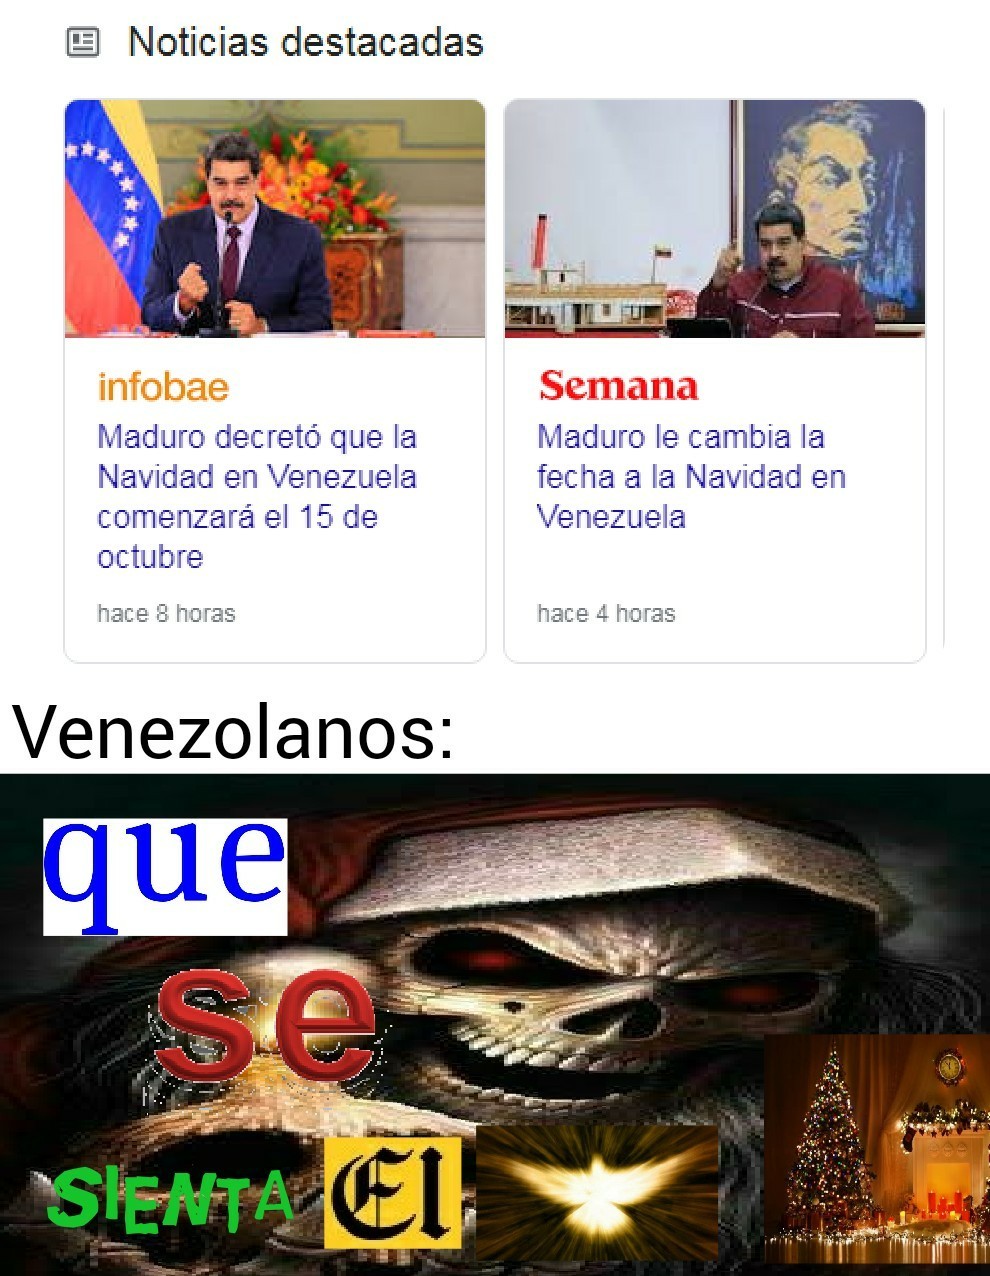 Estoy subiendo este meme el 15 a las 11 con 56 aún es Navidad :) para Venezuela Pd:horario venezolano